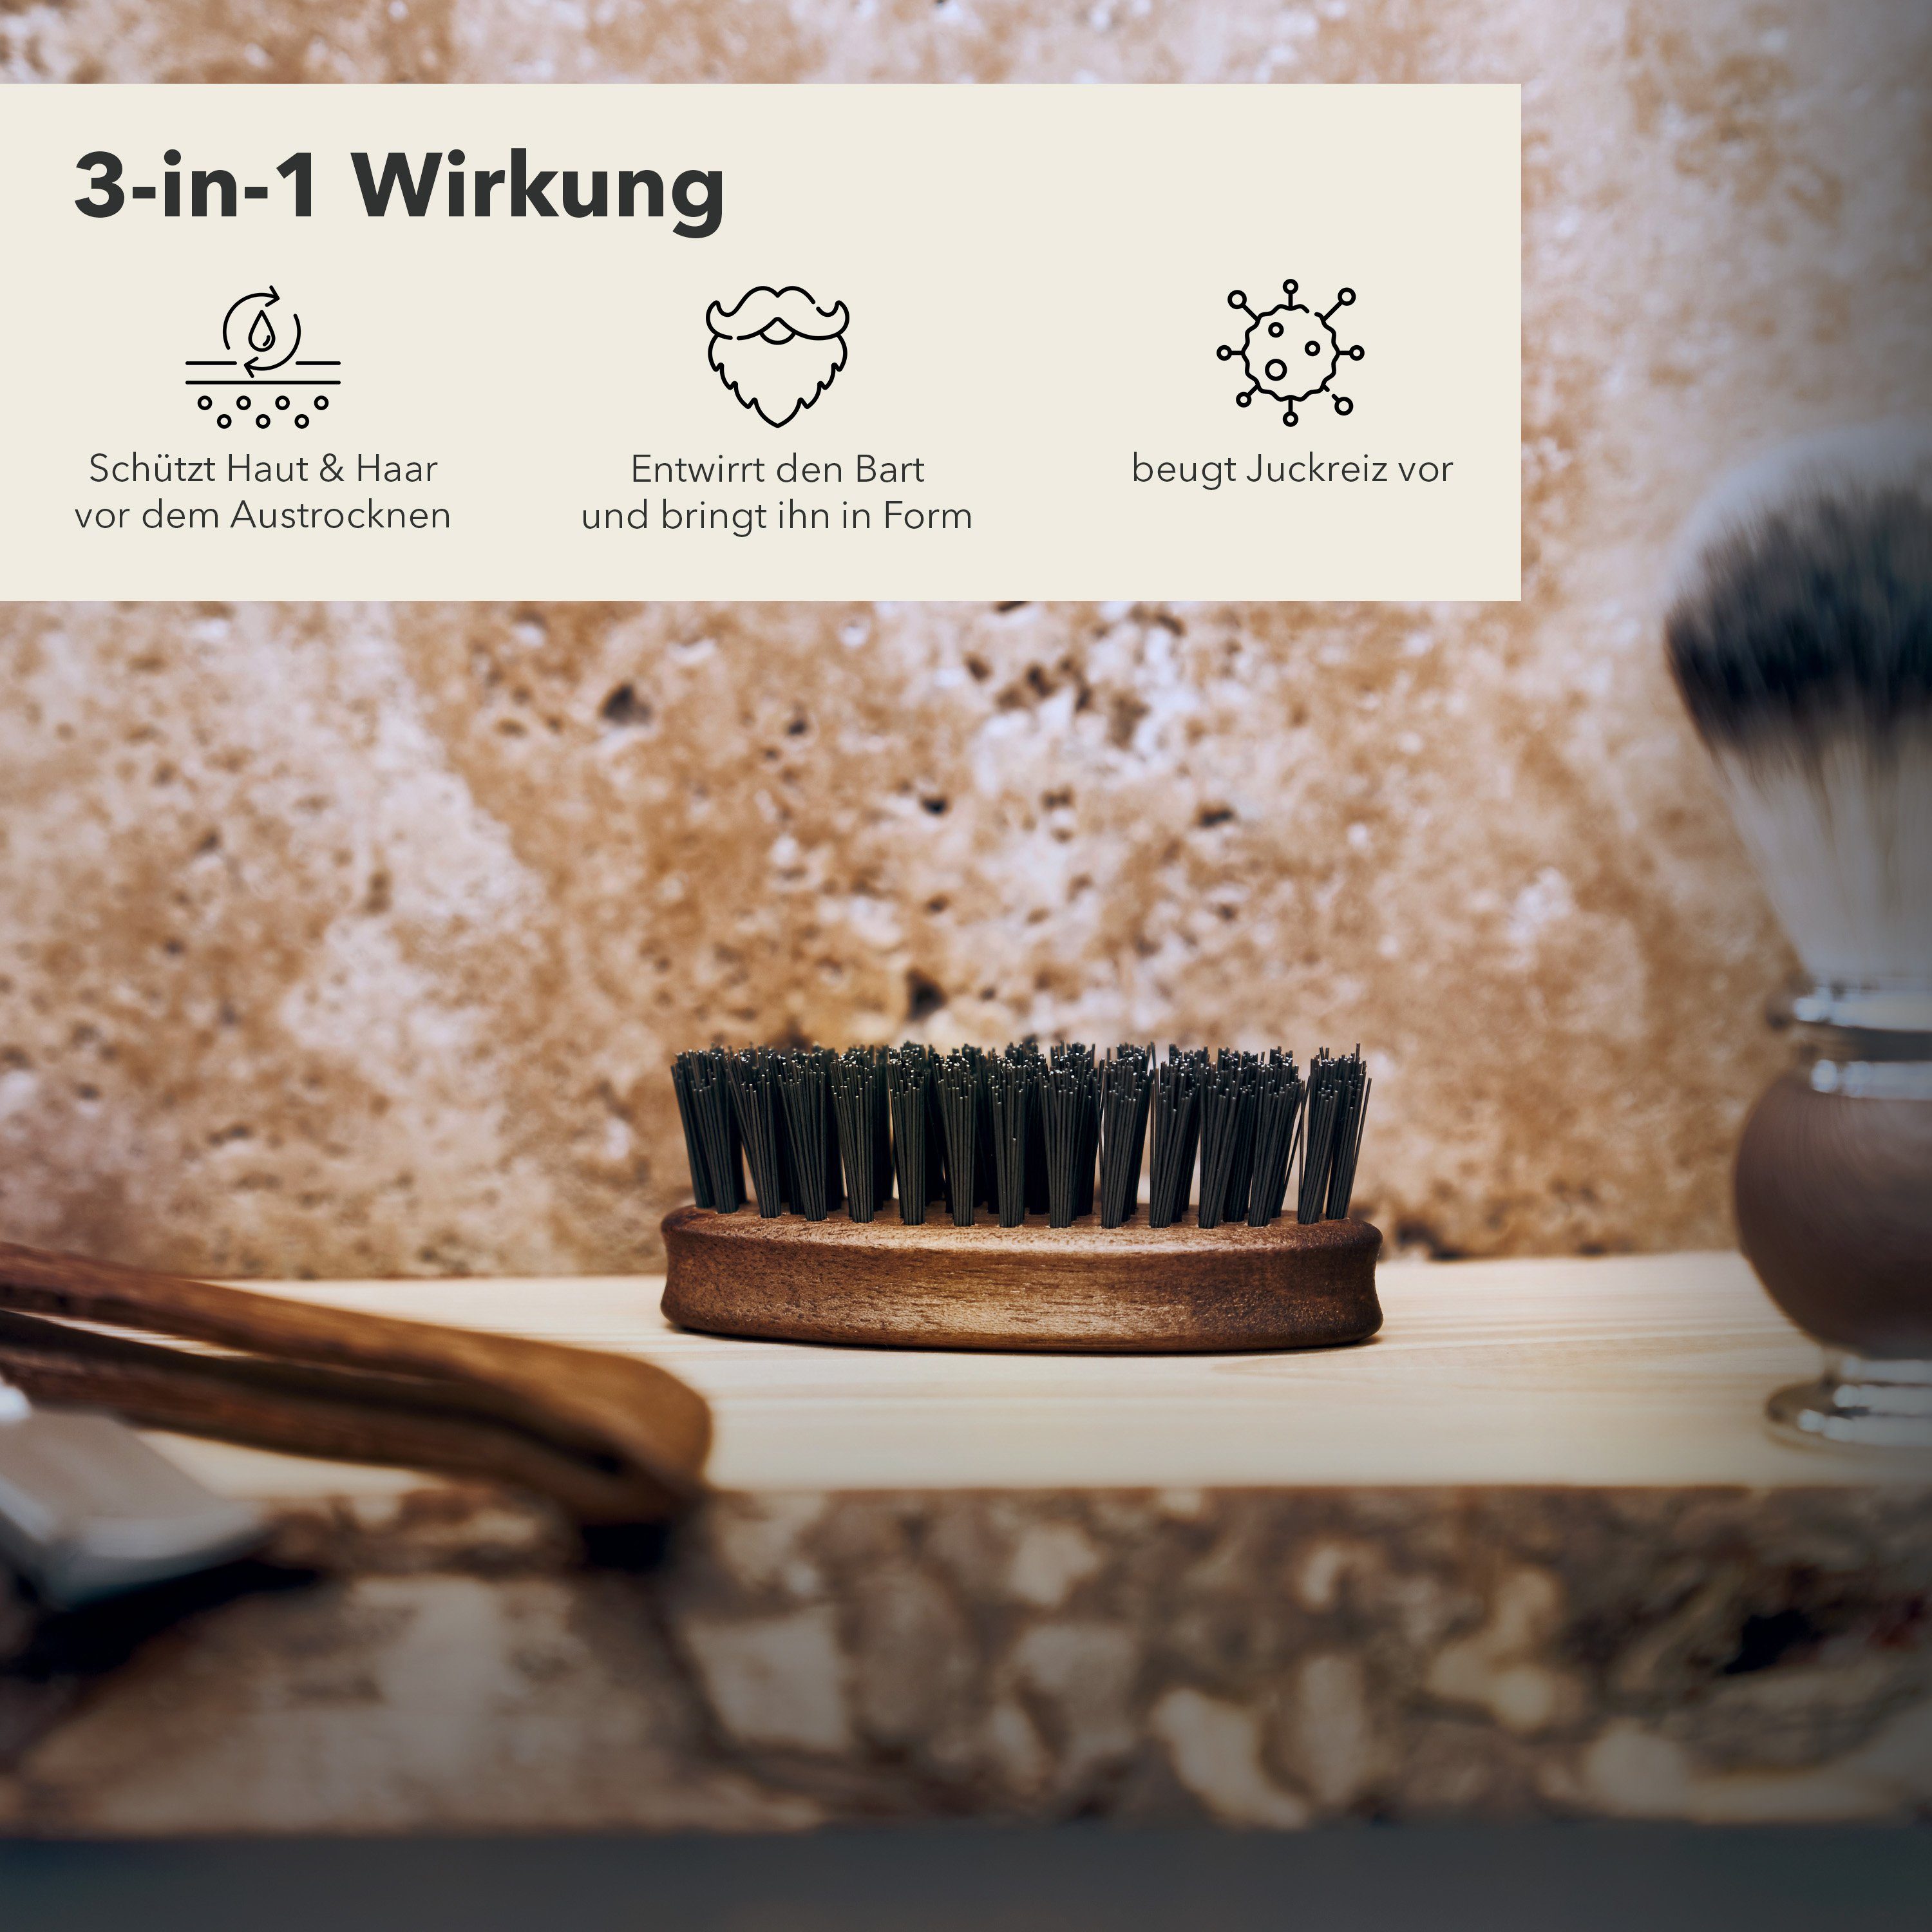 Störtebekker Bartbürste Entwirrt den in ihn bringt - und Made Germany Bart in Form